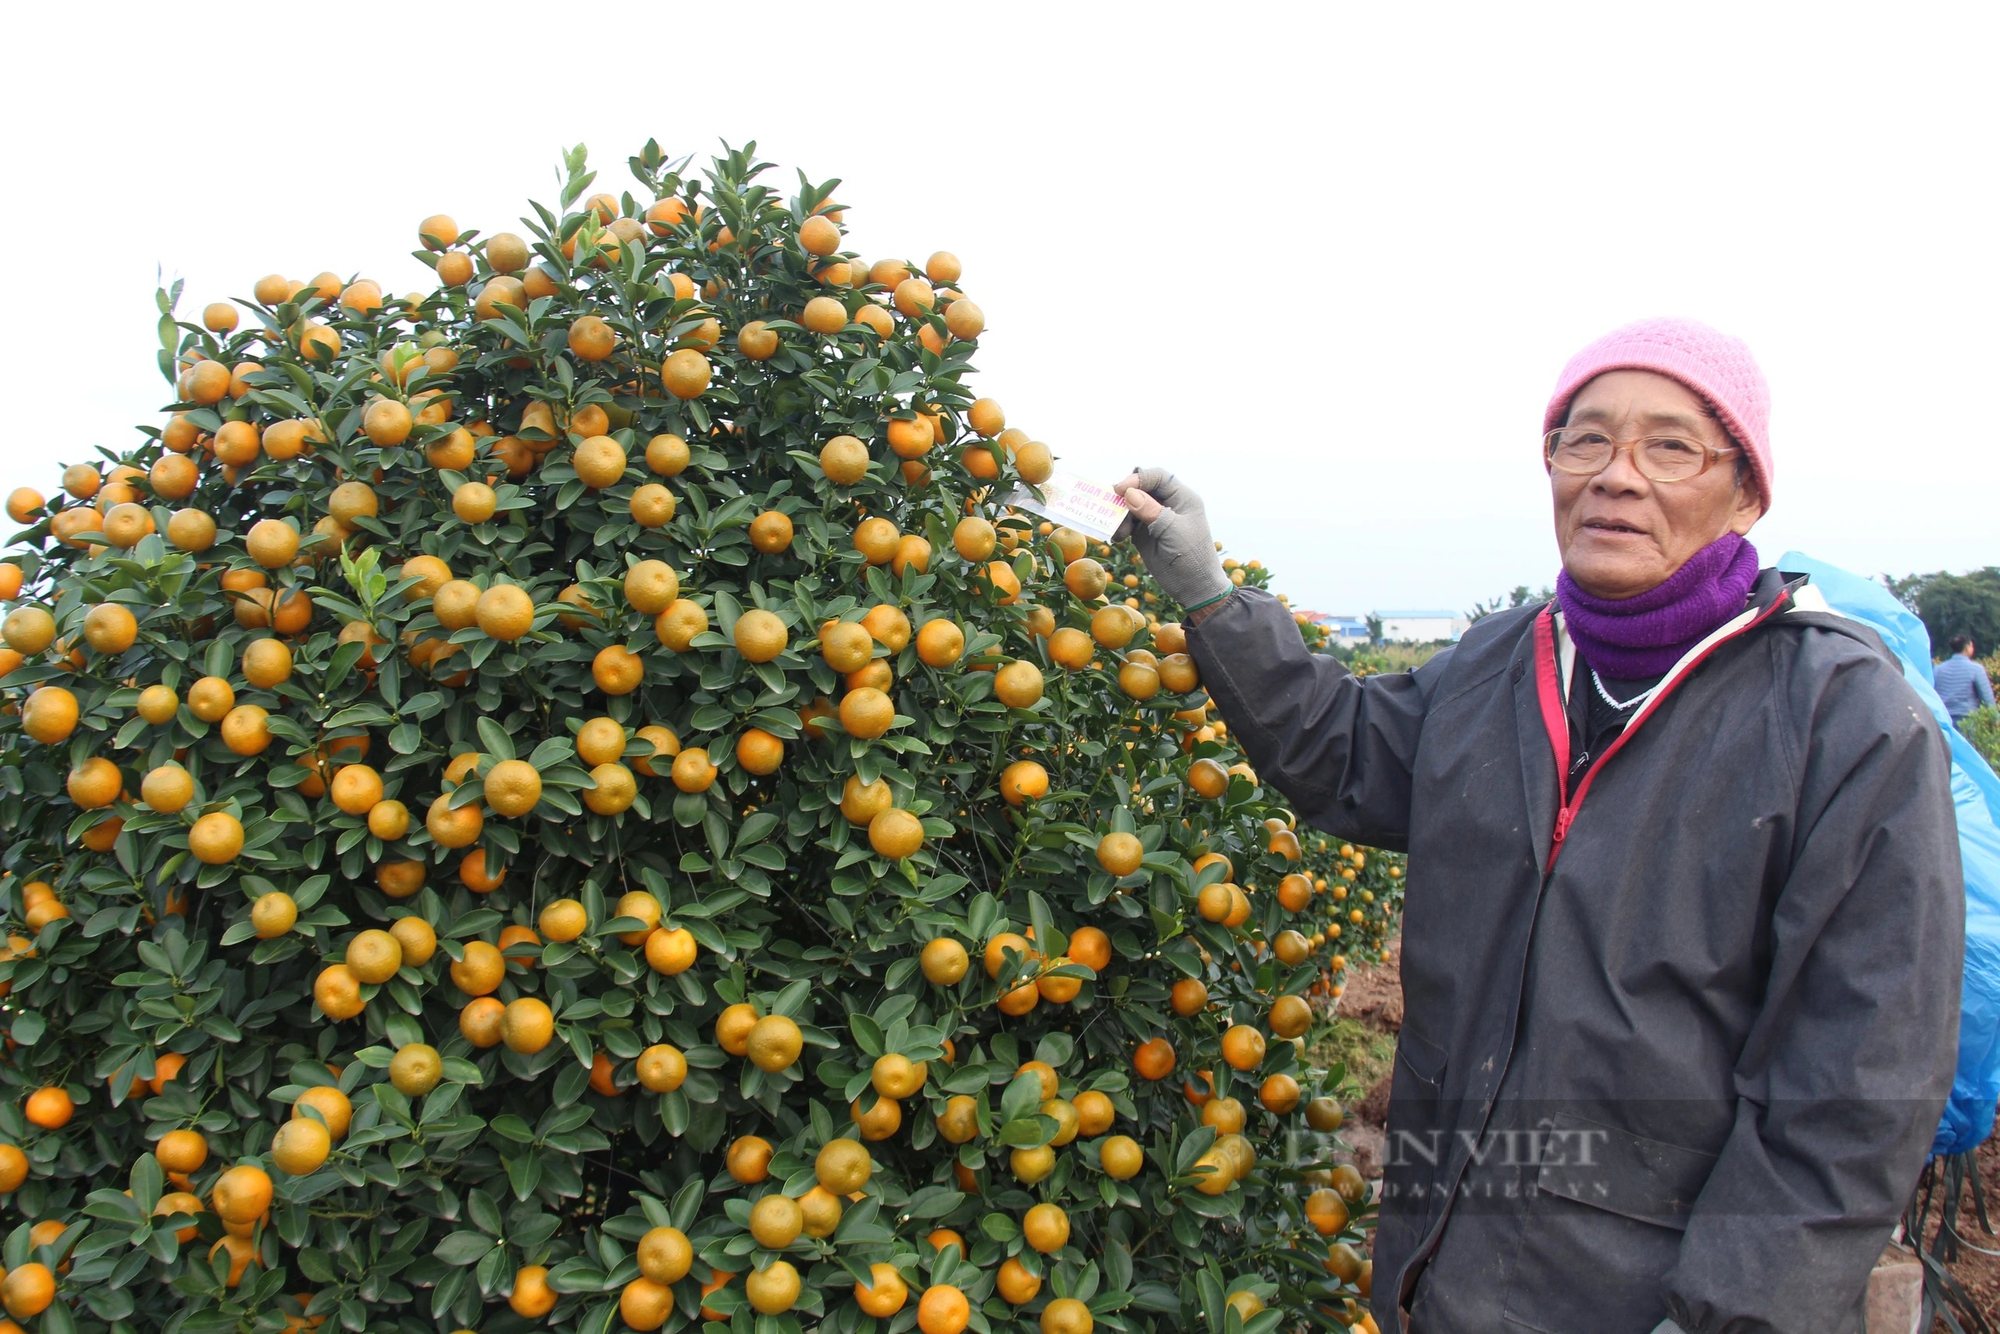 Quất tết toàn cây tăng giá, khách vẫn nườm nượp chở, cả làng trồng quất cảnh ở Nam Định vui- Ảnh 4.